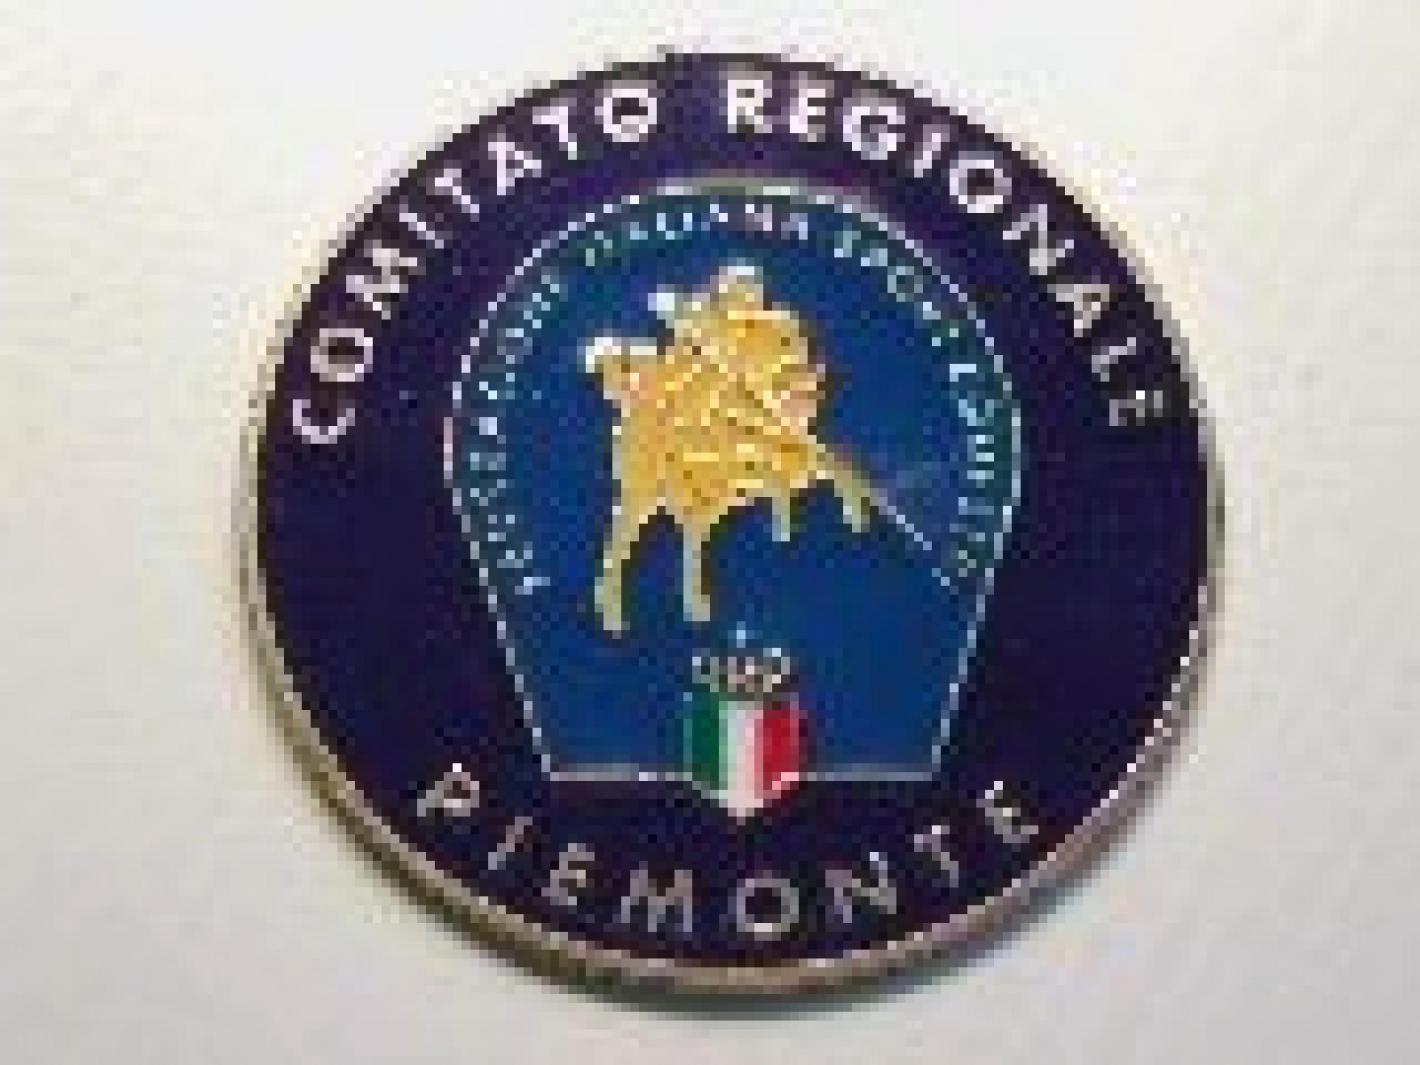 images/piemonte/large/medium/Piemonte_2.jpg